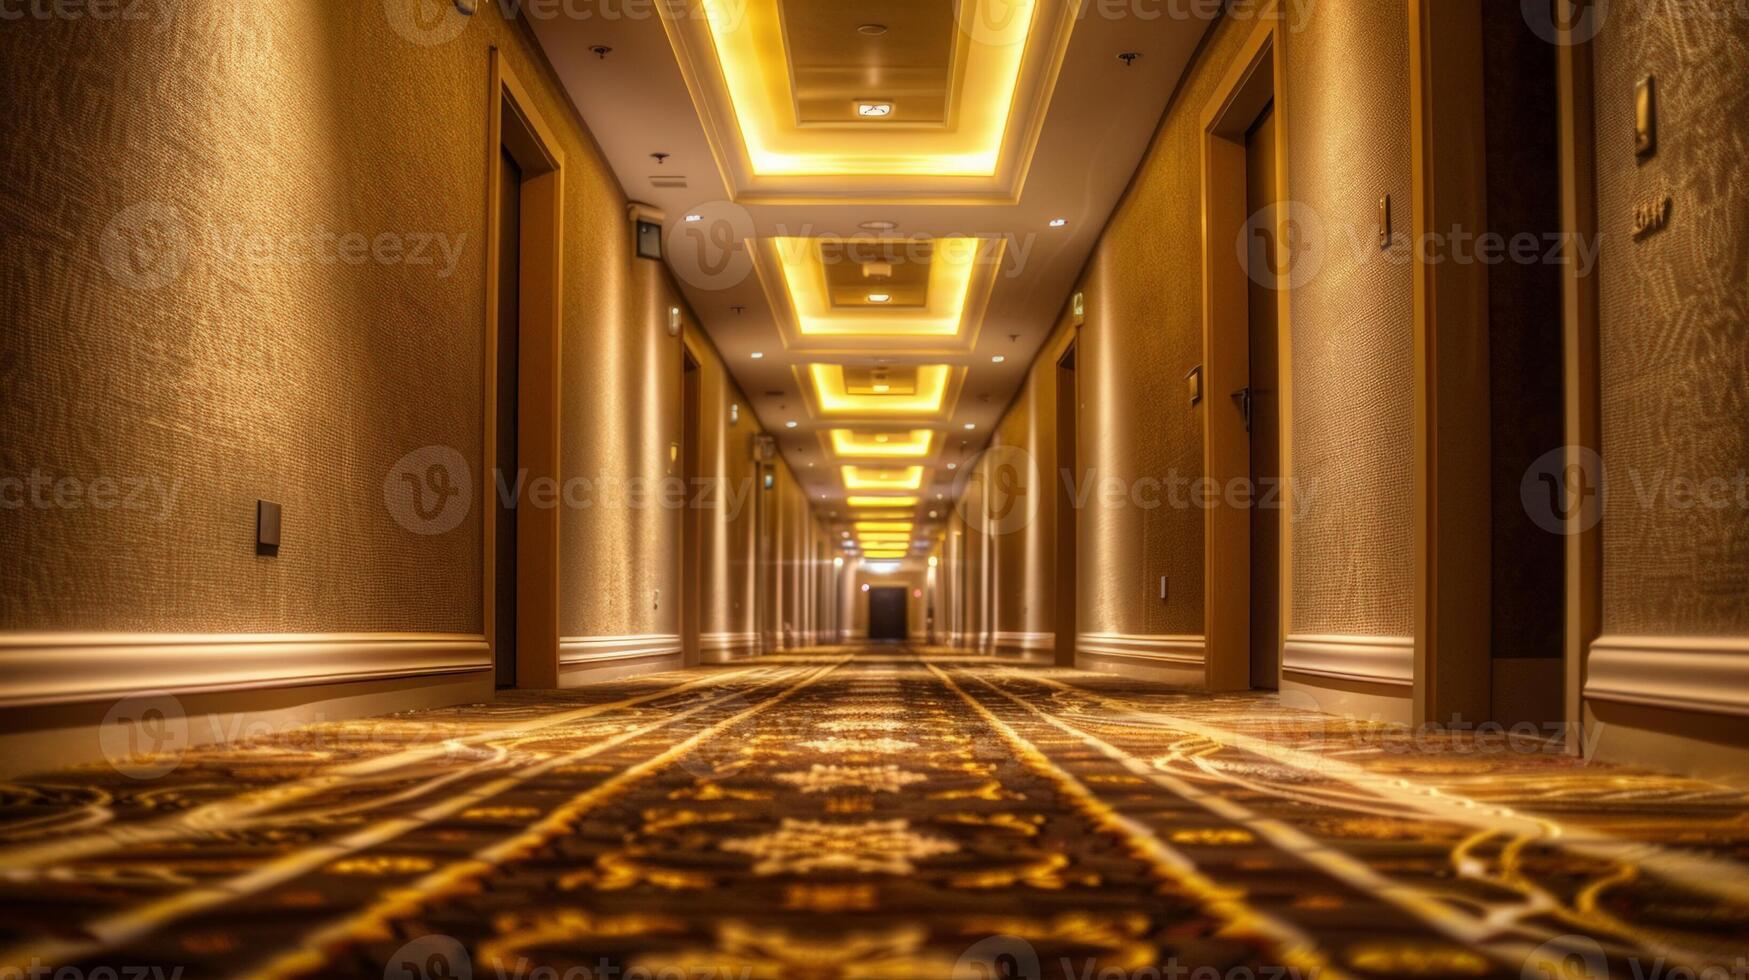 elegante hotel corredor com caloroso ambiente iluminação e luxuoso tapete, ideal para o negócio viagem, hospitalidade indústria temas, e de luxo alojamento configurações foto